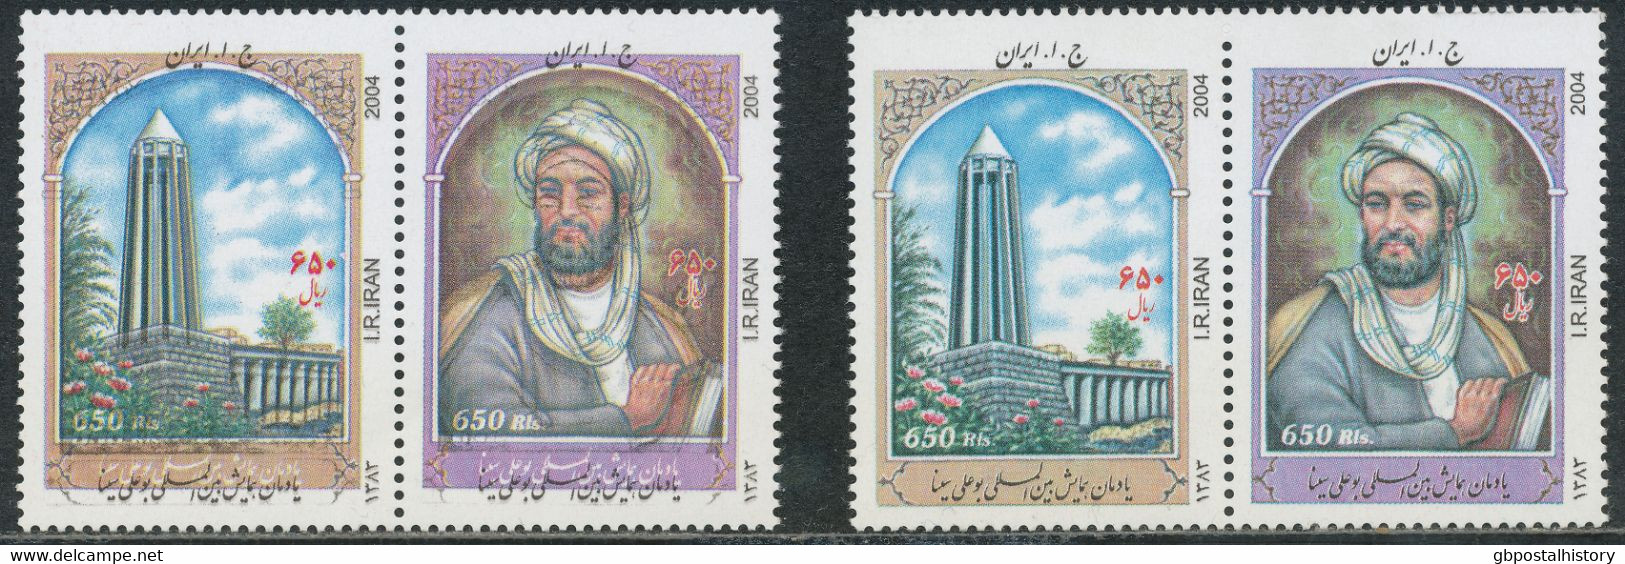 IRAN 2004, Weltkongreß über Avicenna, Hamadan - Persischer Philosoph Und Arzt, 650 R. Postfr. Kab.-Zusammendruck, ABART: - Iran